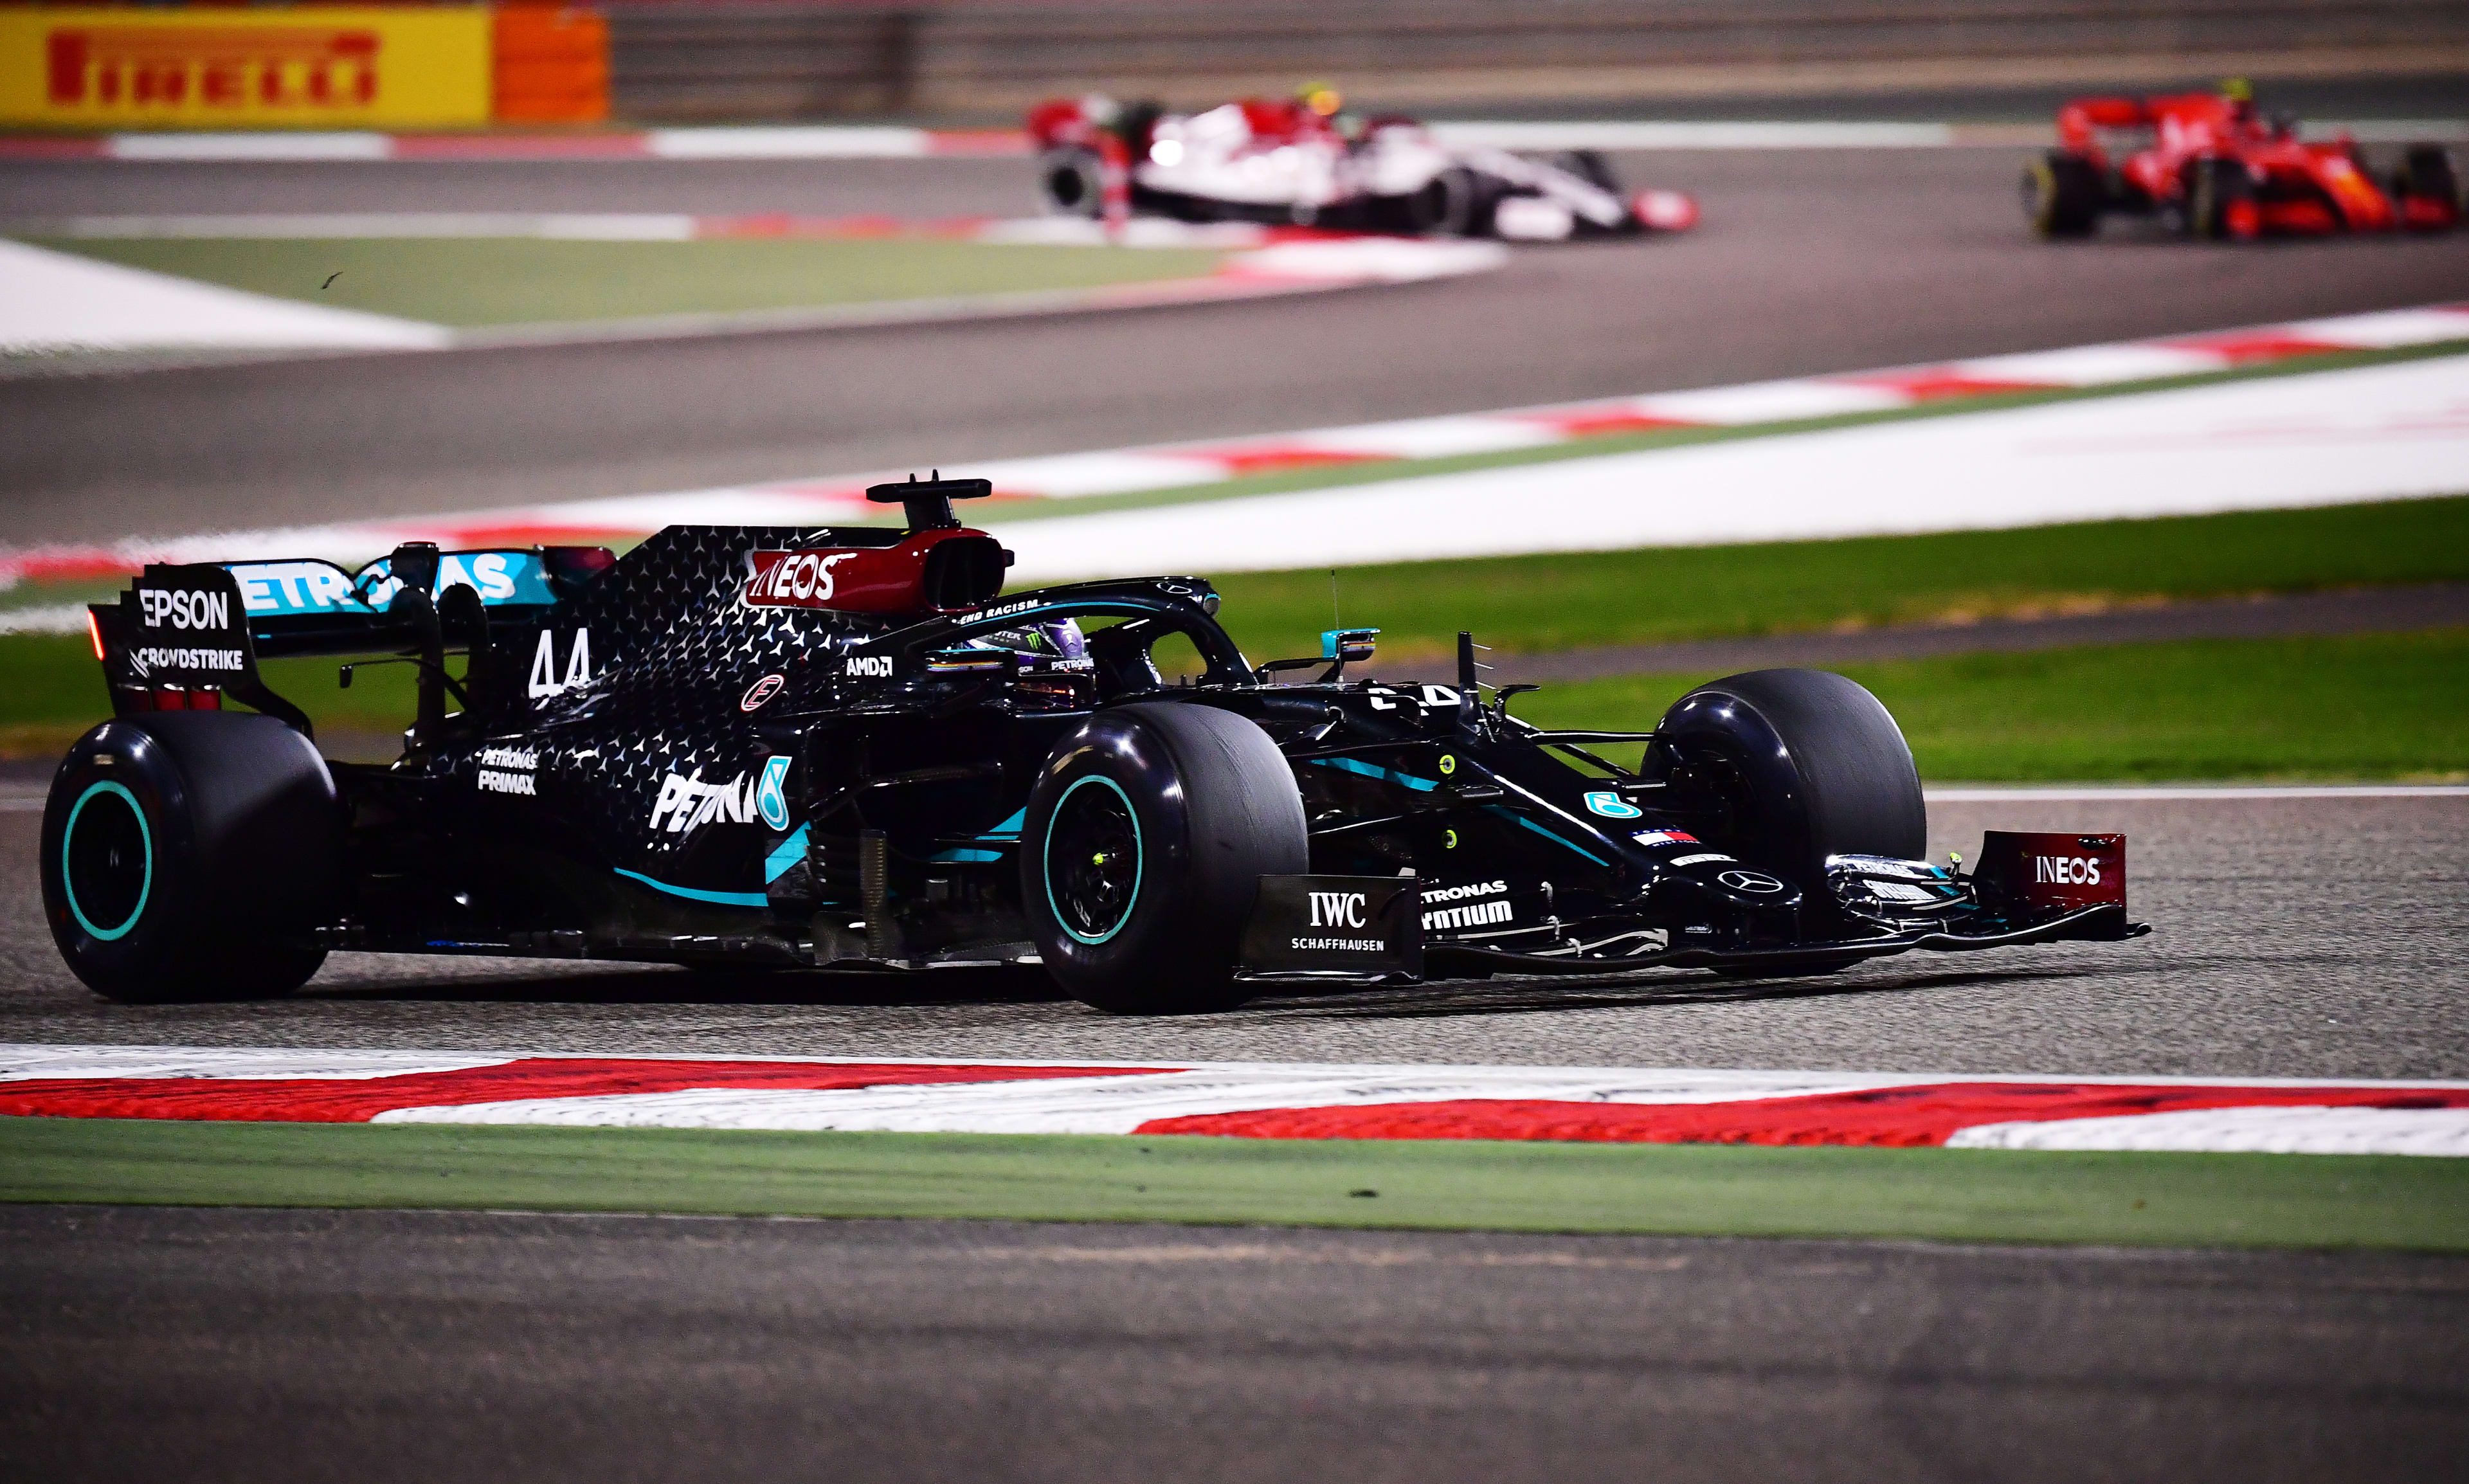 Pirelli F1 – GP do Bahrain: Alonso é o mais rápido nos treinos livres